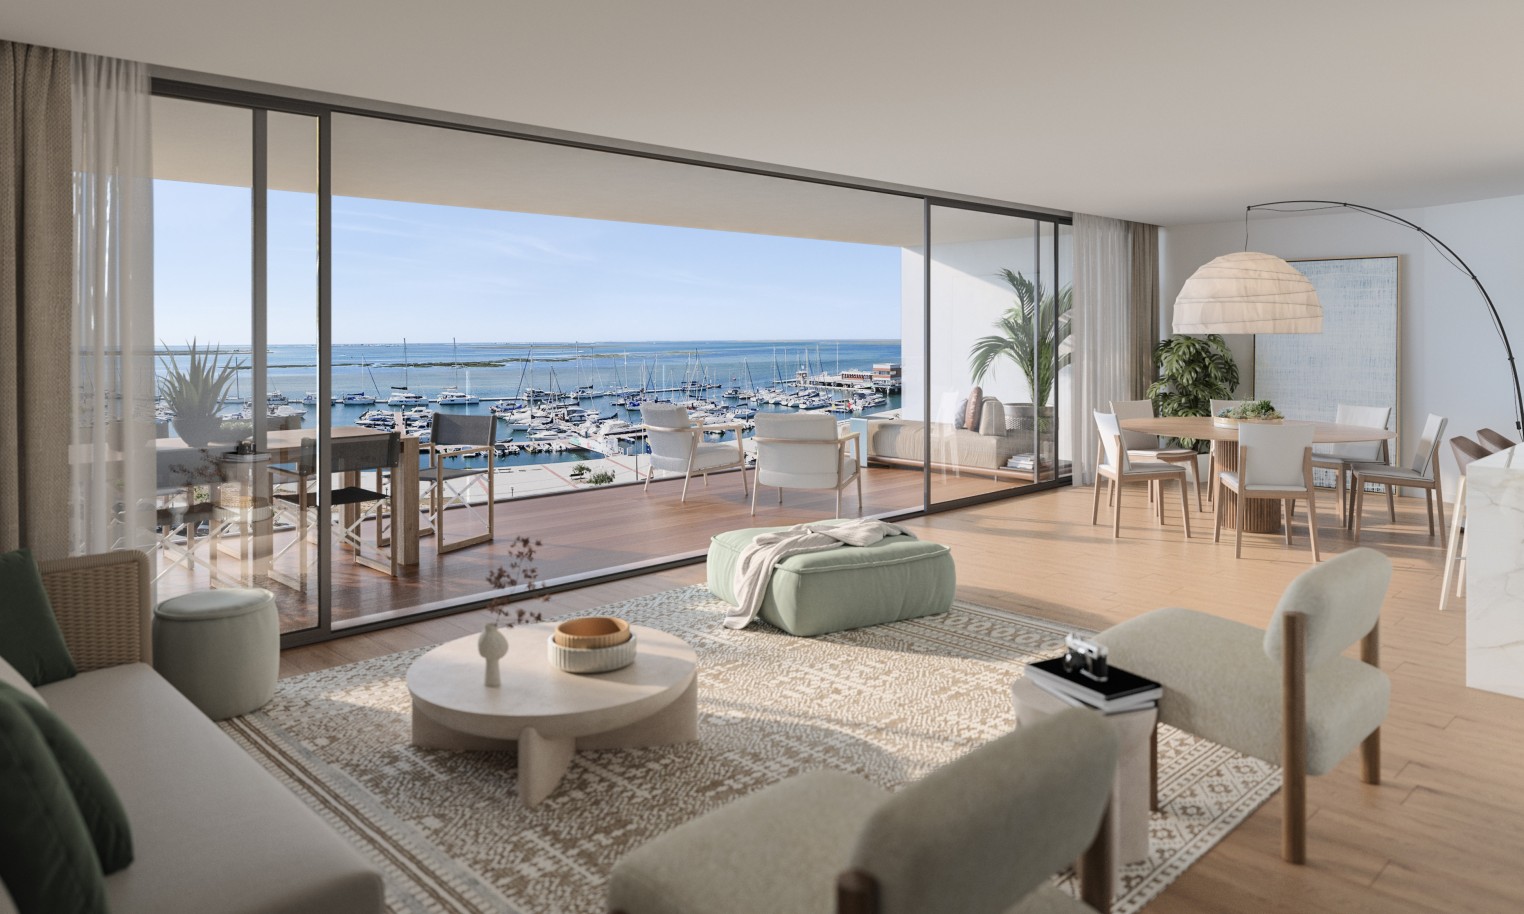 Appartements neufs avec vue sur mer, 1, 2 & 3 chambres, à vendre à Olhão, Algarve_244257